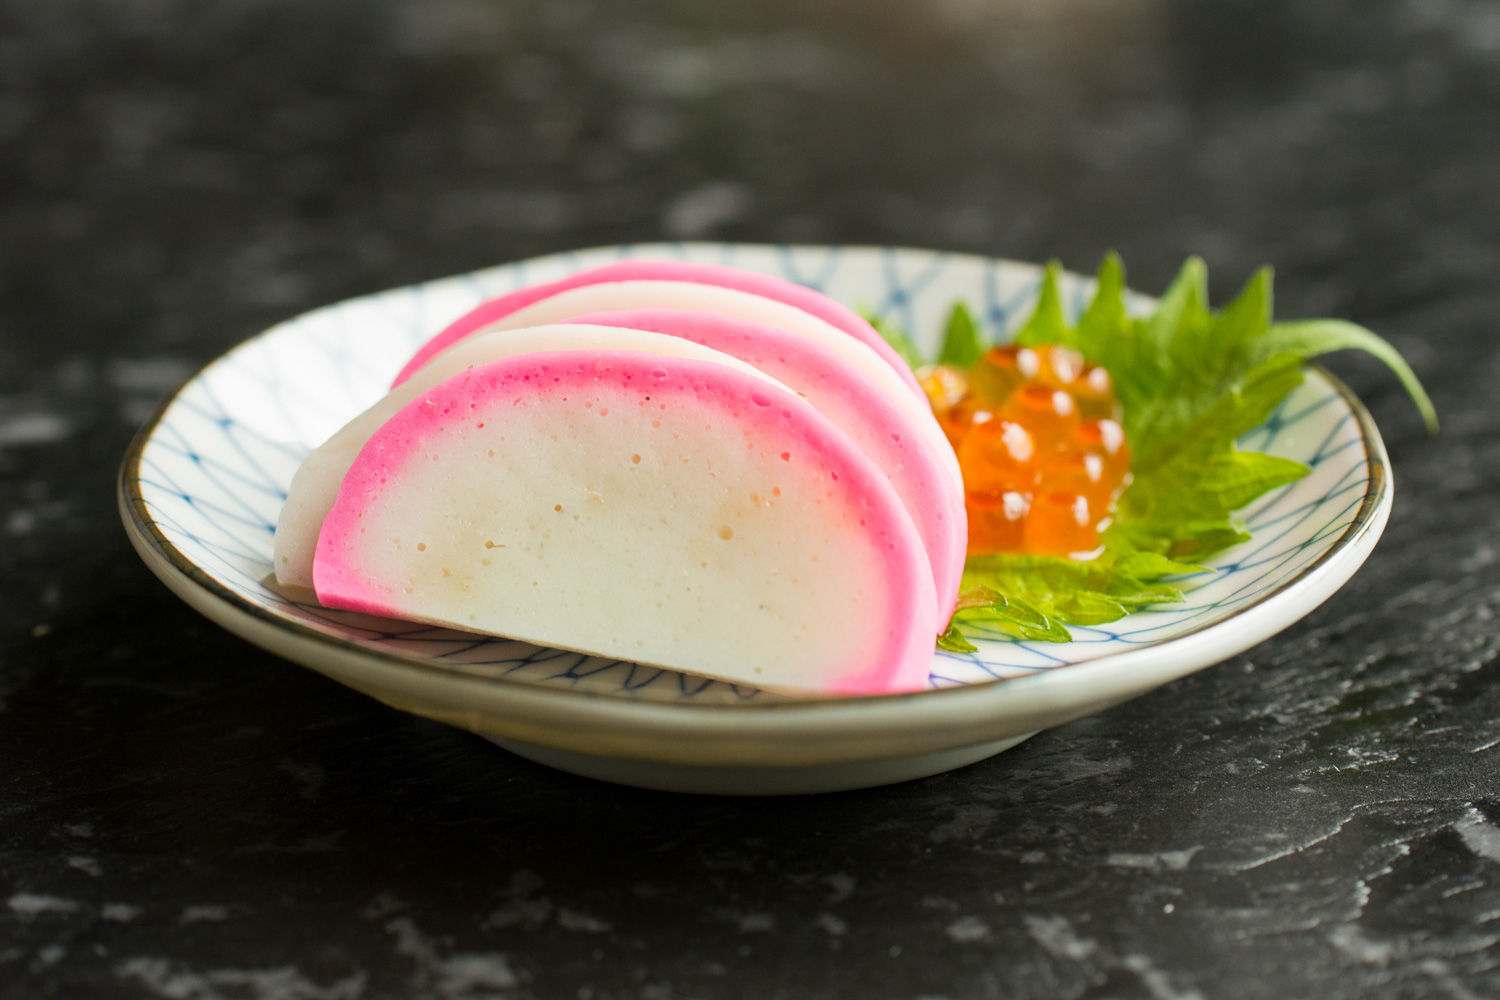 japanese fish cake